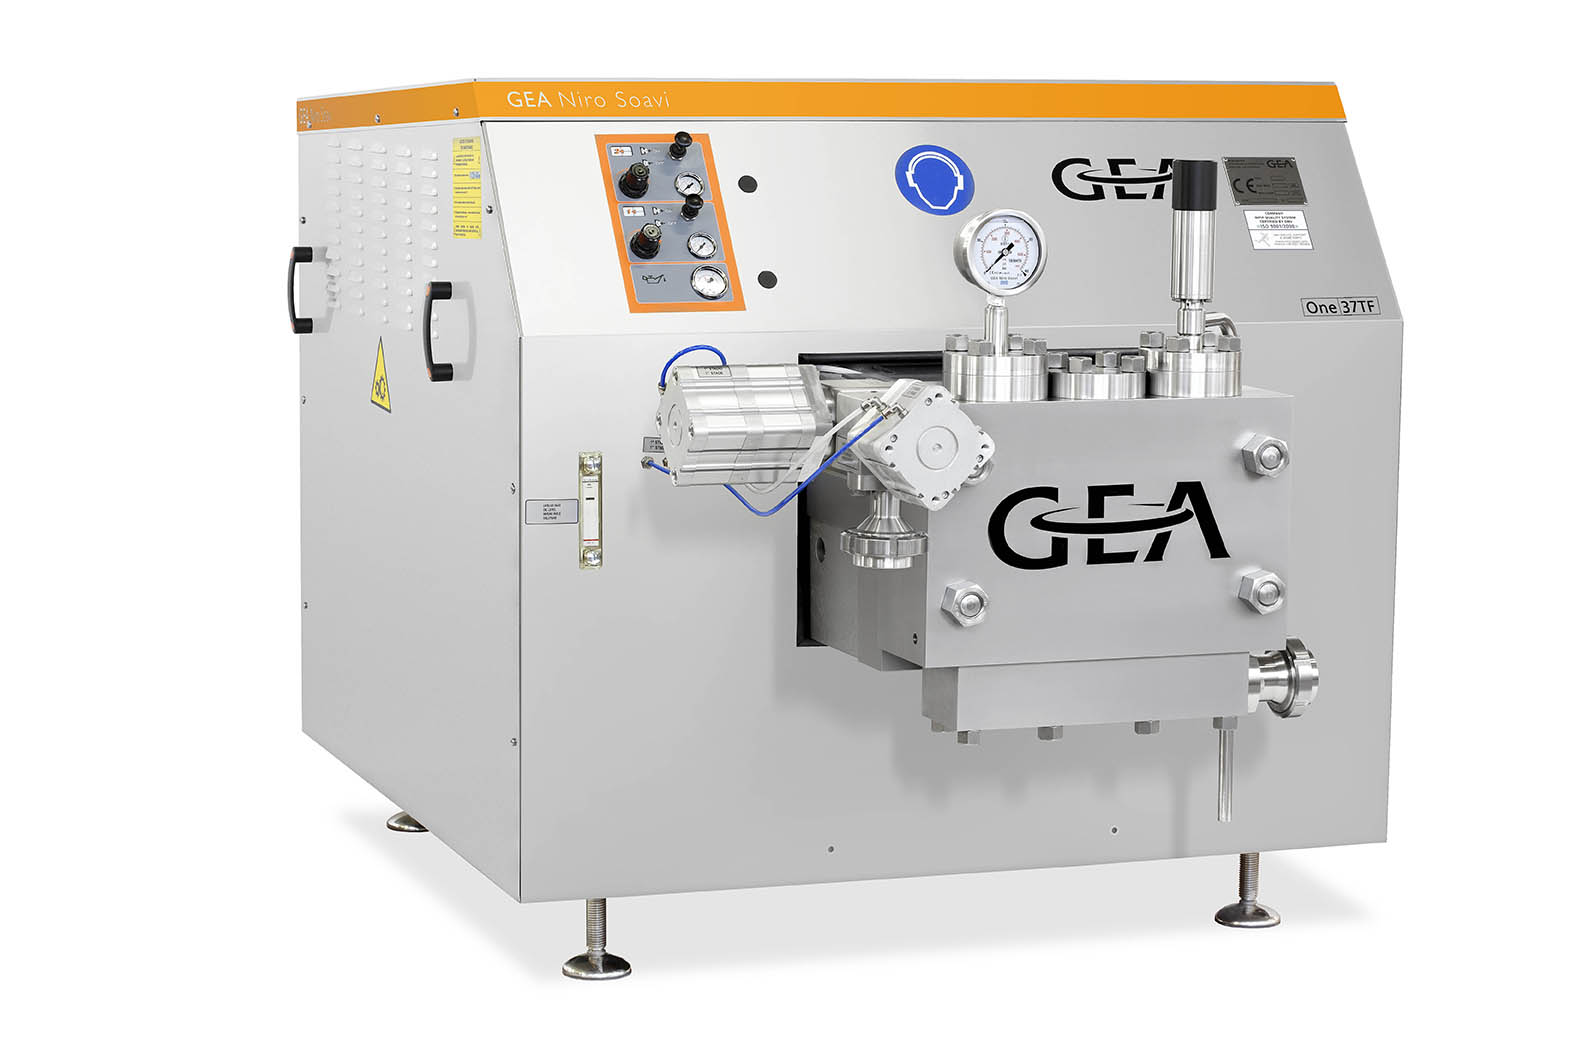 دستگاه هموژنایزر One37TF محصول شرکت GEA